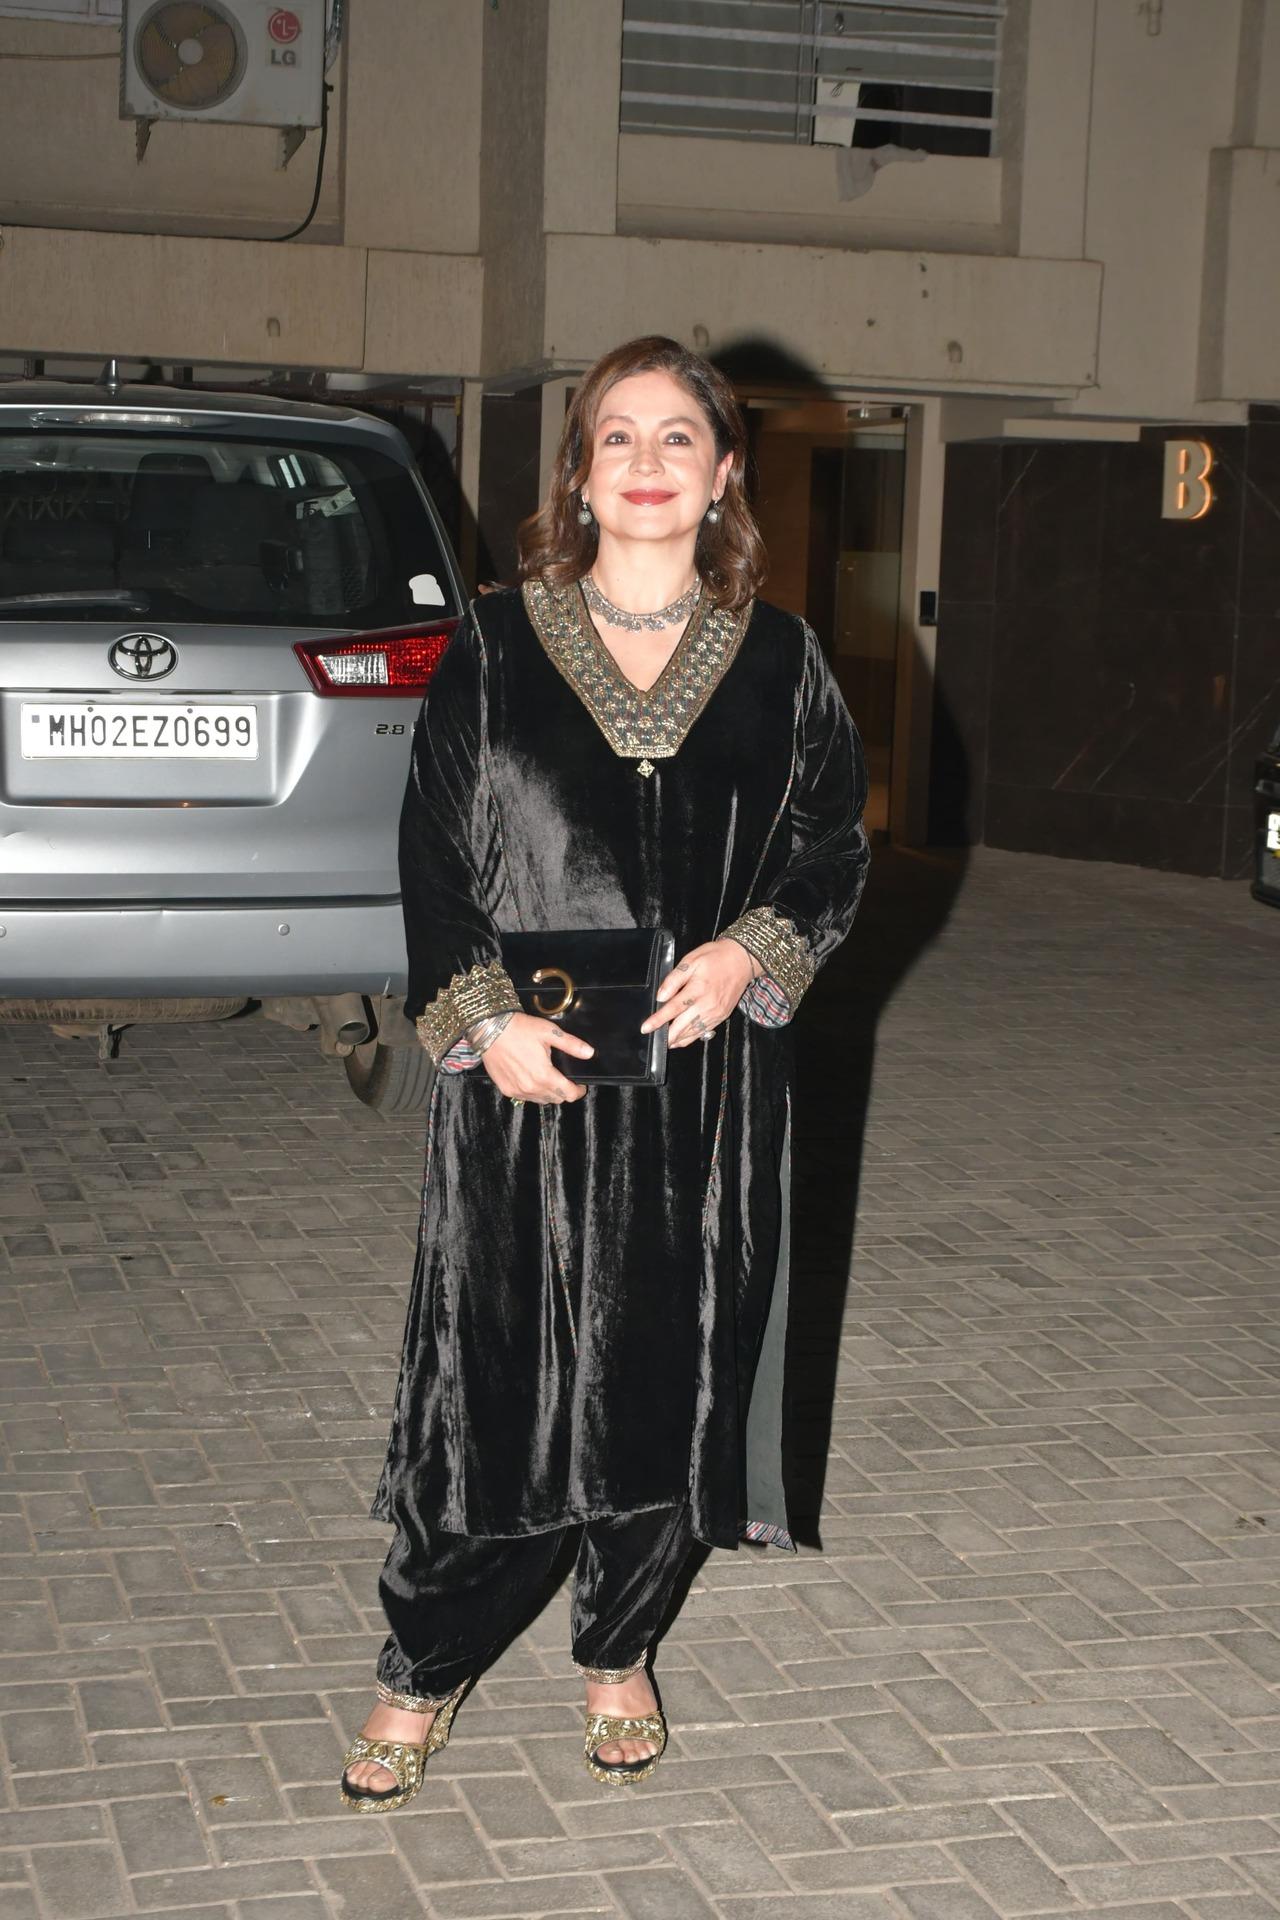 Pooja Bhatt arrives for the dinner party at father Mahesh Bhatt's house in a black velvet dress